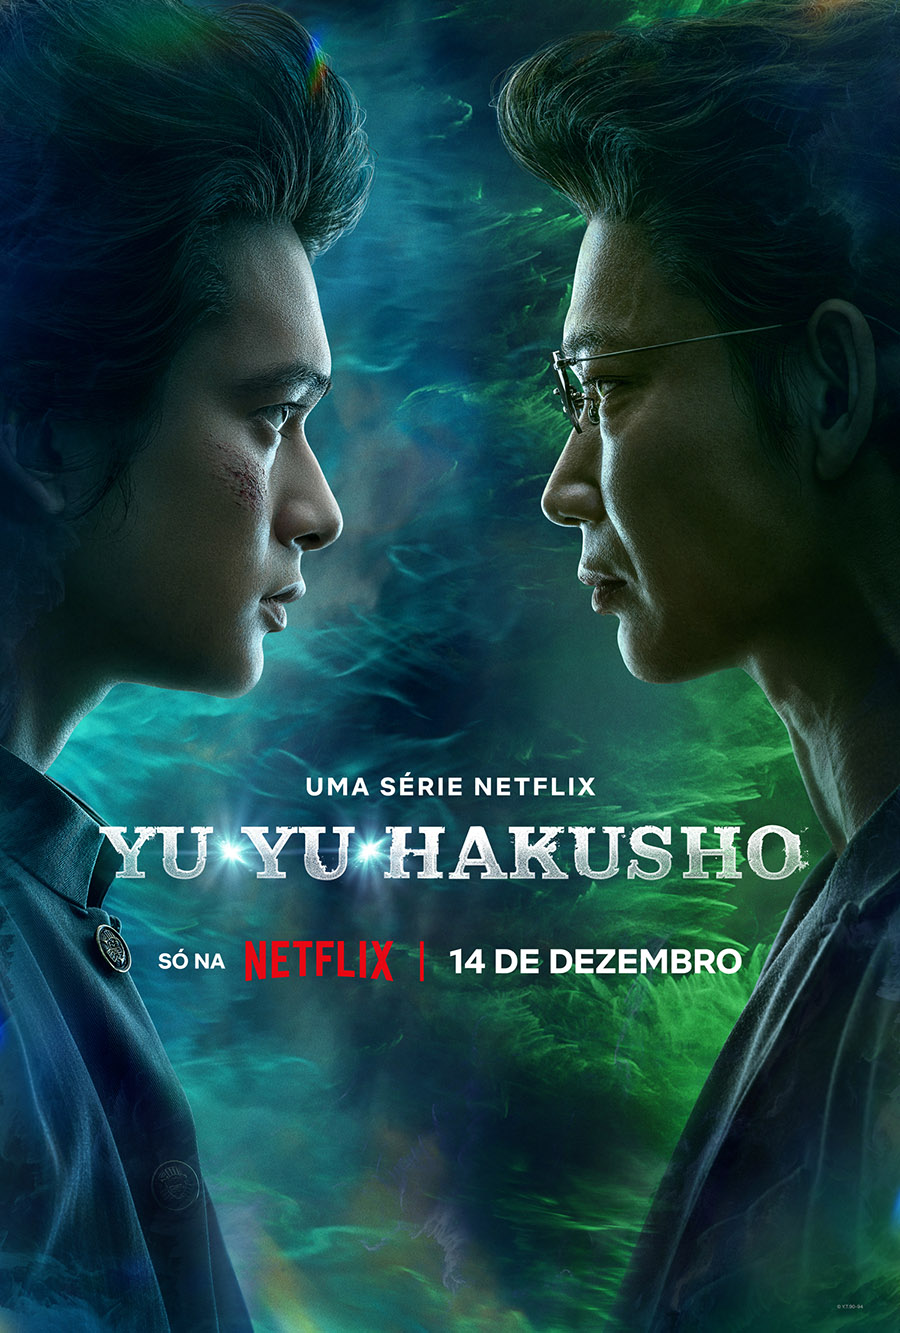 Yu Yu Hakusho: Netflix anuncia live action inspirado no mangá